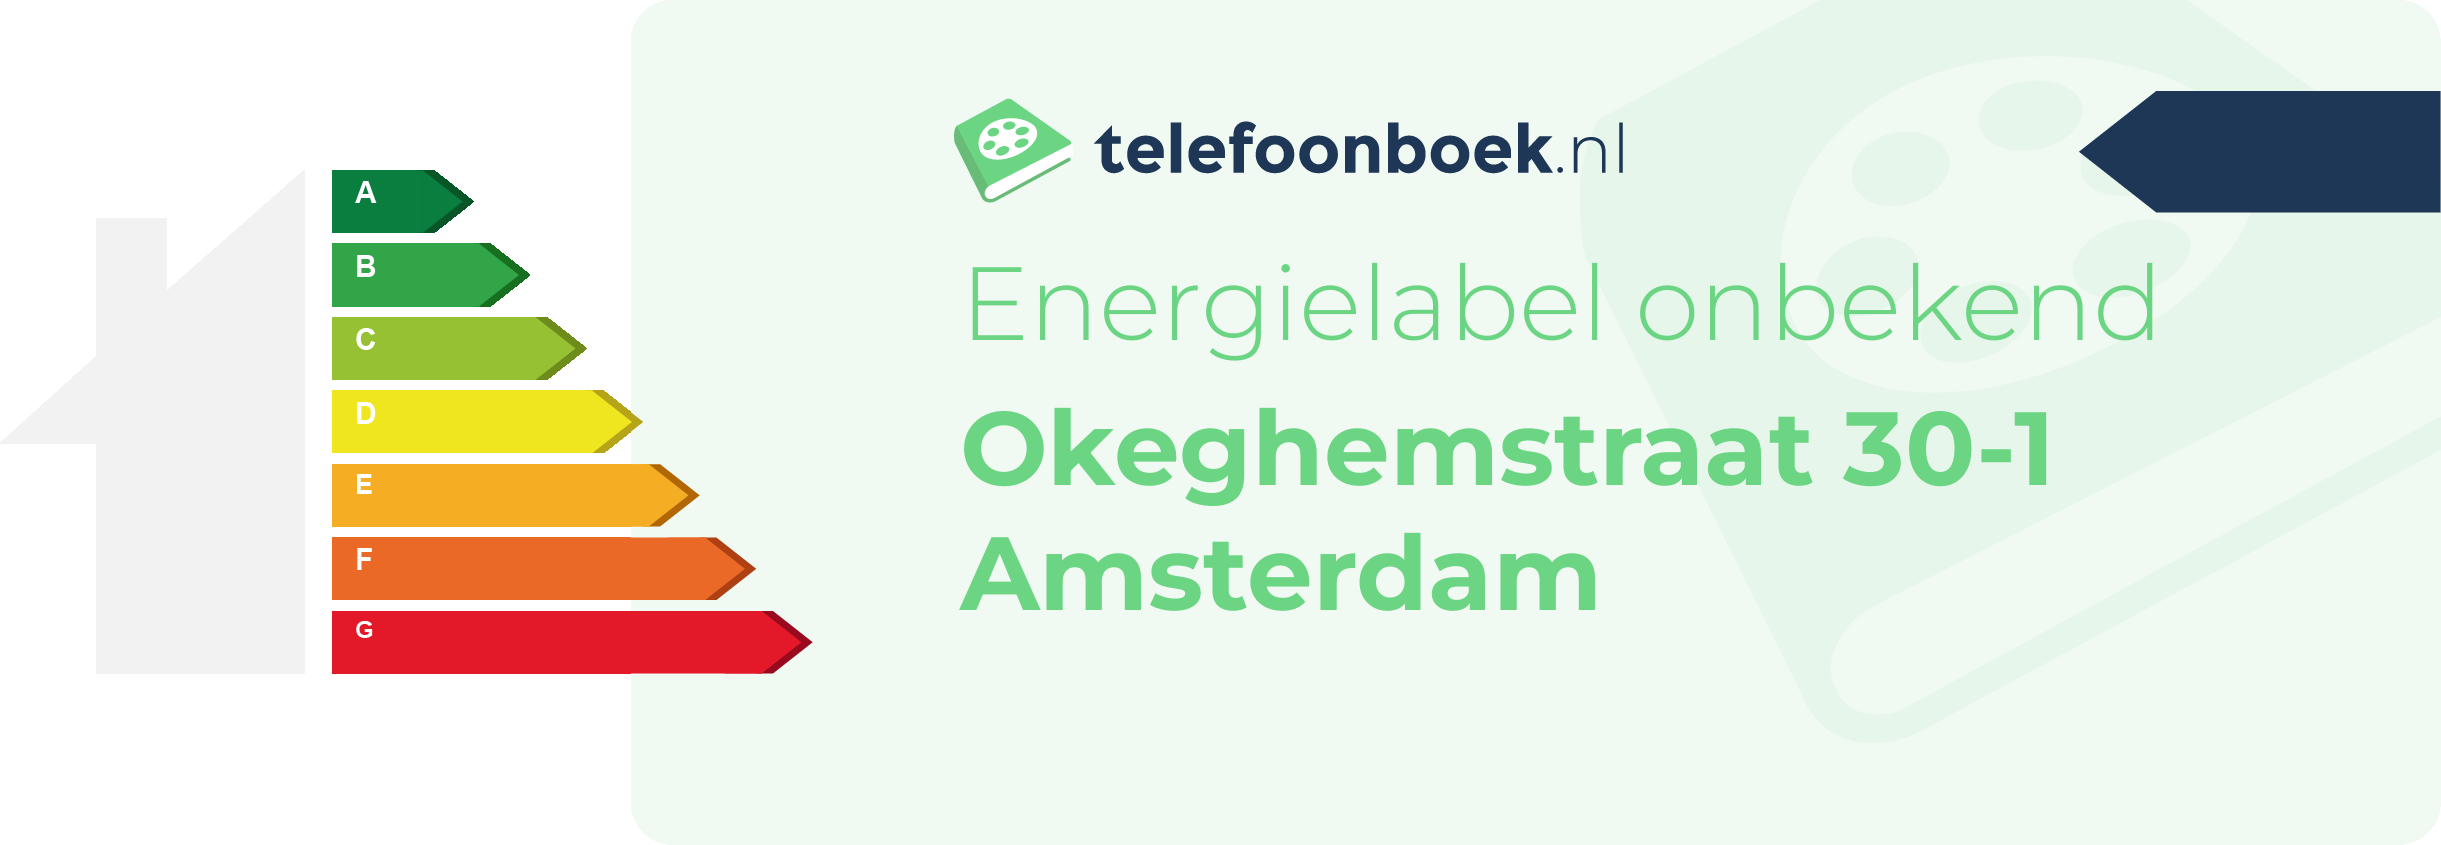 Energielabel Okeghemstraat 30-1 Amsterdam